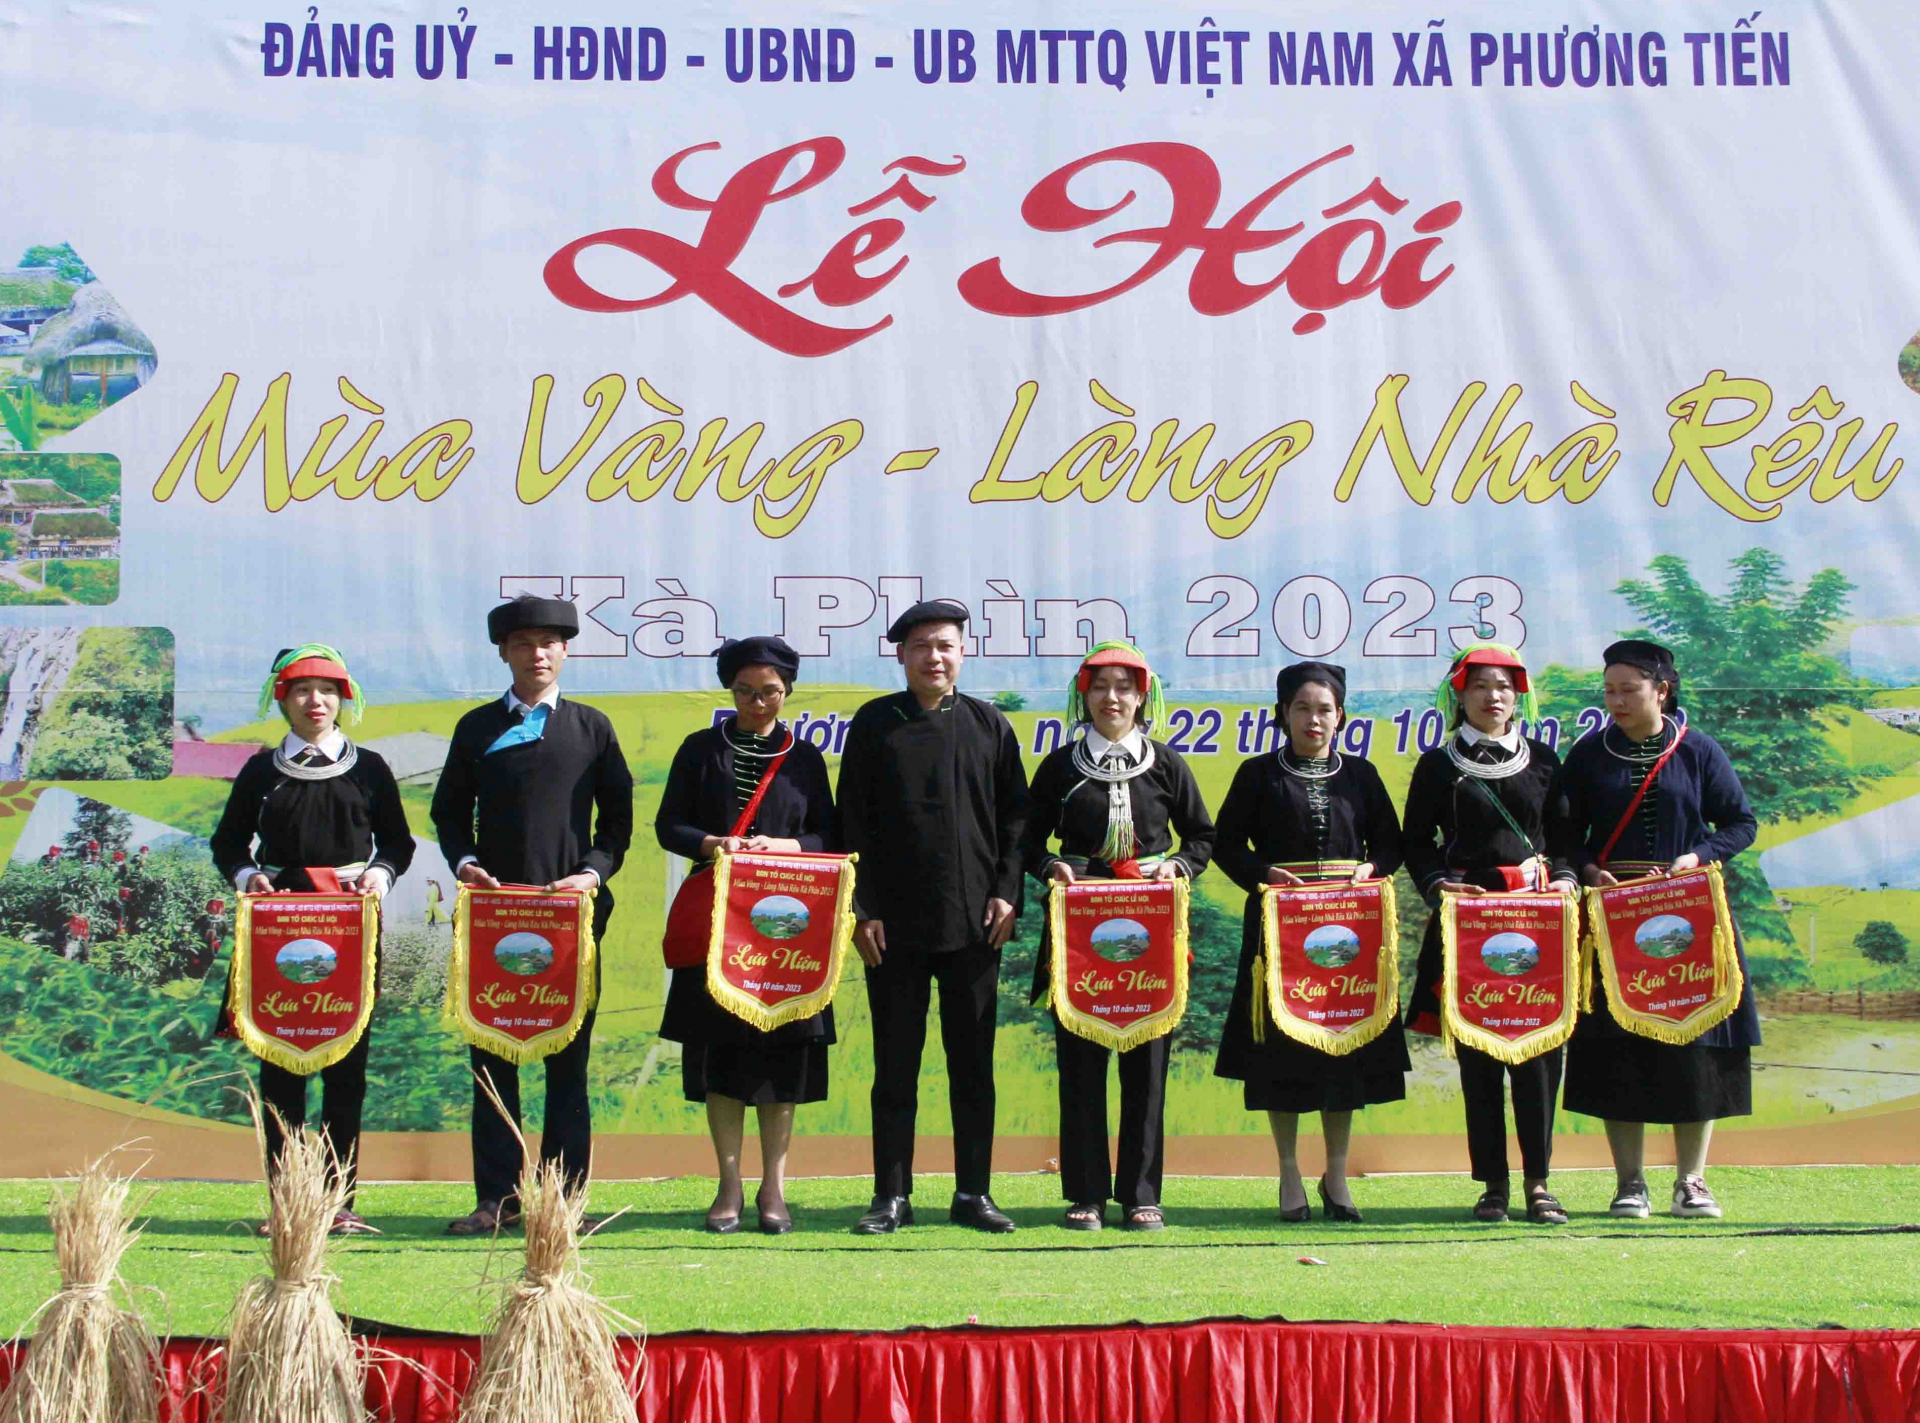 Lãnh đạo xã Phương Tiến tặng Cờ lưu niệm cho các thôn tham gia lễ hội.